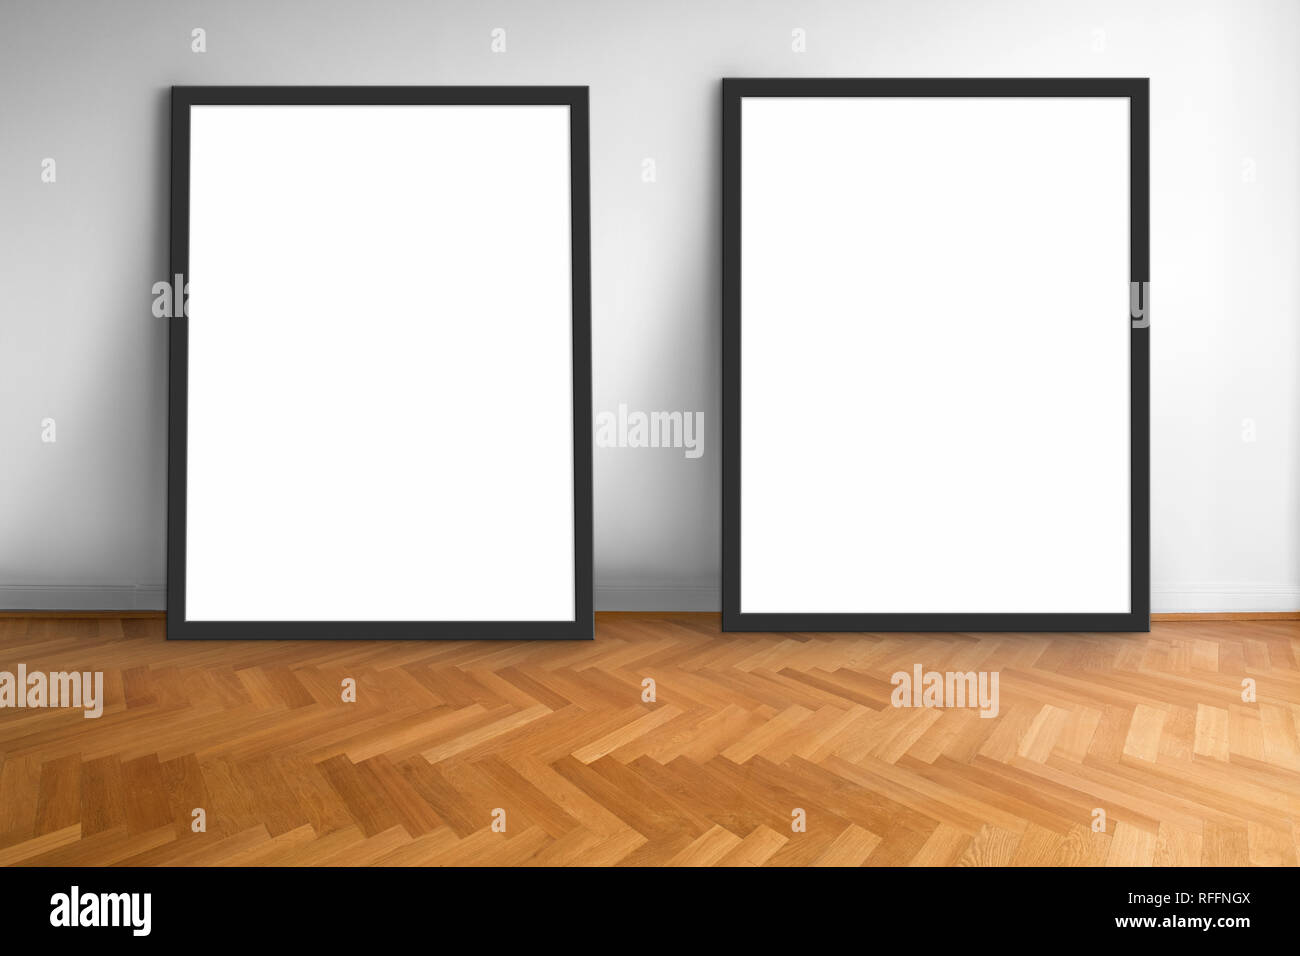 Due vuoto cornici sul pavimento in parquet muro bianco sfondo , fotogrammi vuoti Foto Stock